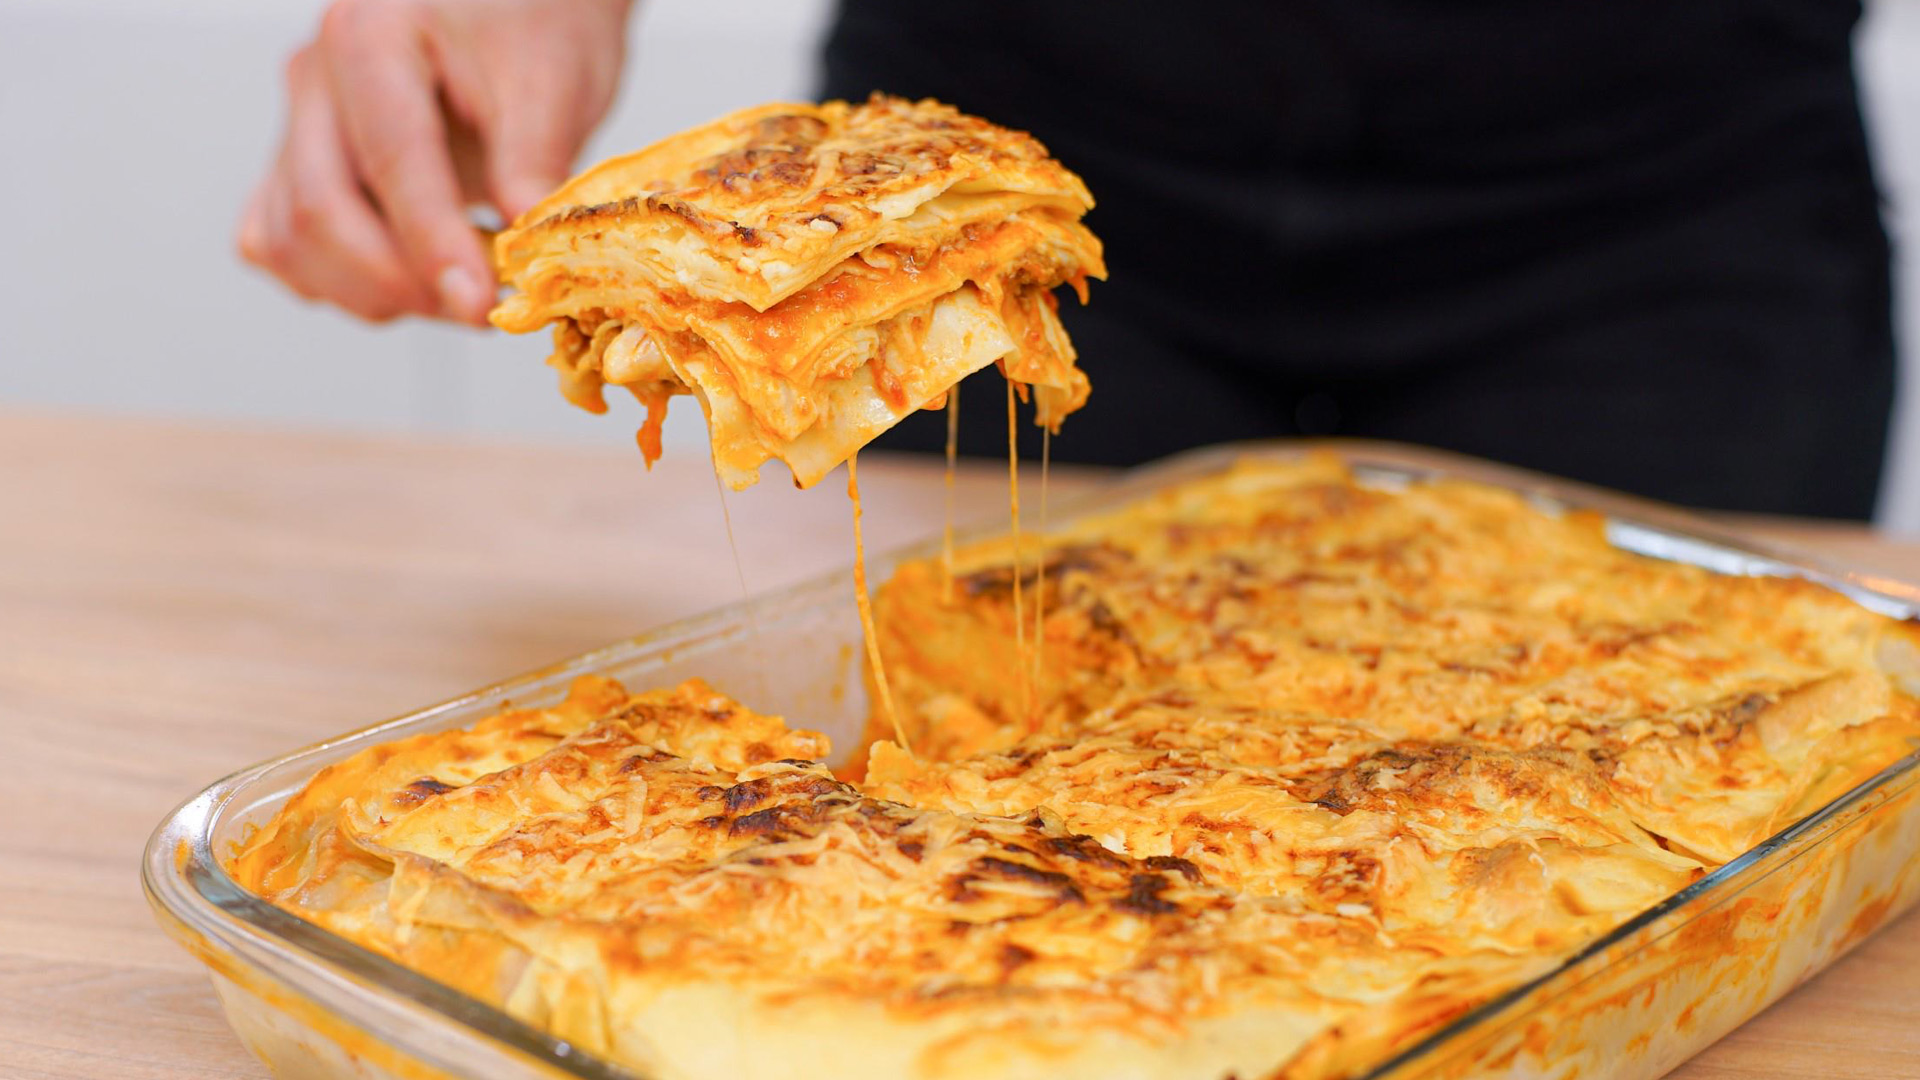 Recetas básicas: Pasta, panes, pizza, salsa, cremas y dulces